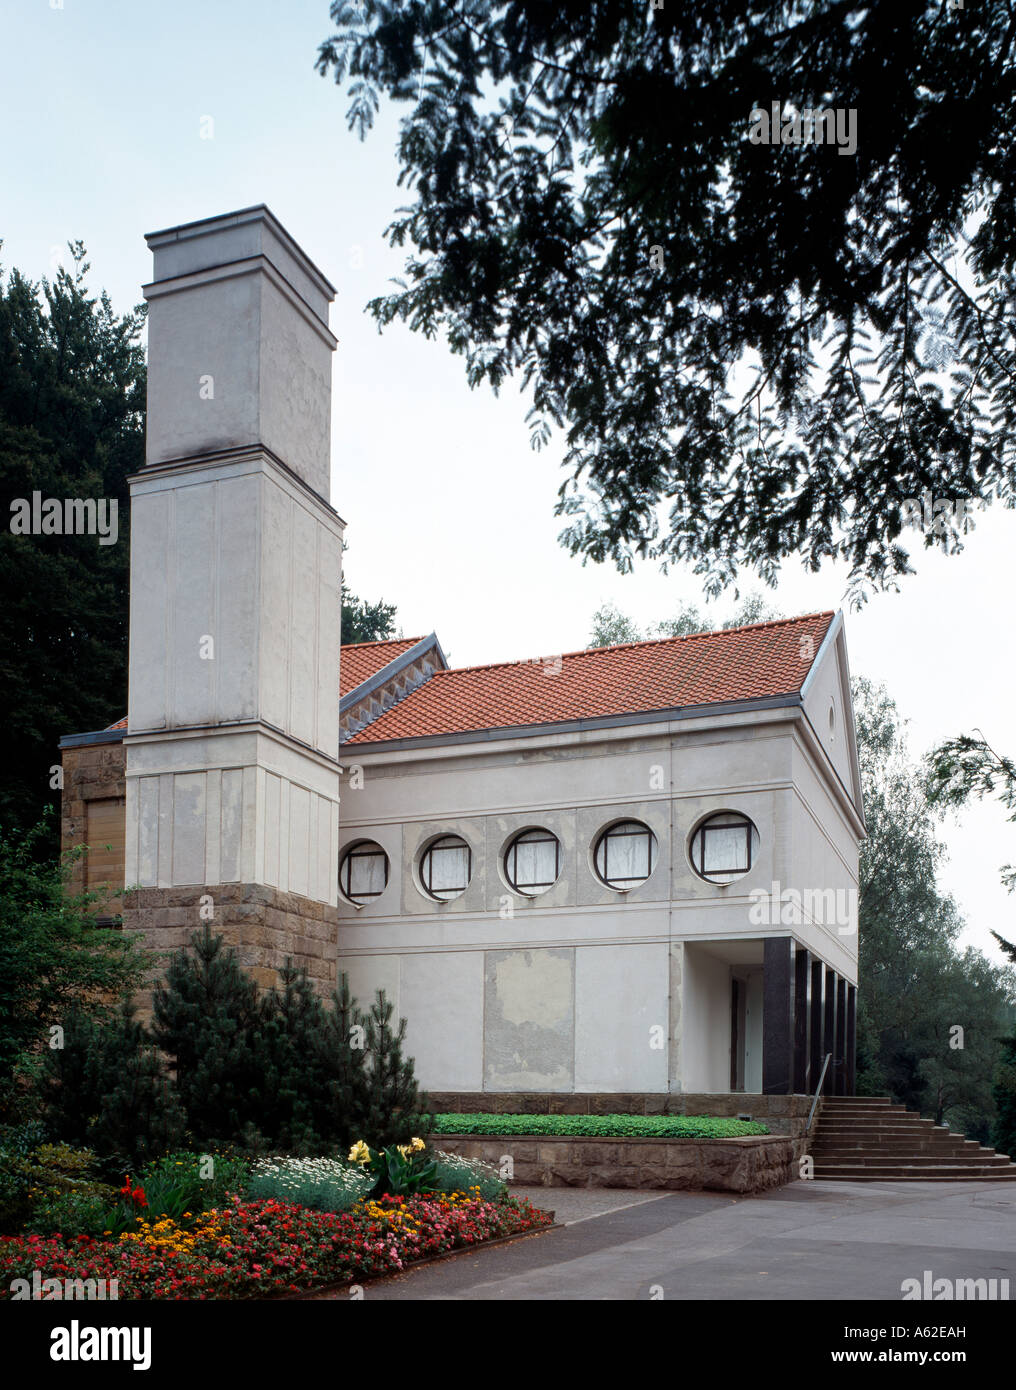 Hagen, Krematorium von Peter Behrens, Stock Photo